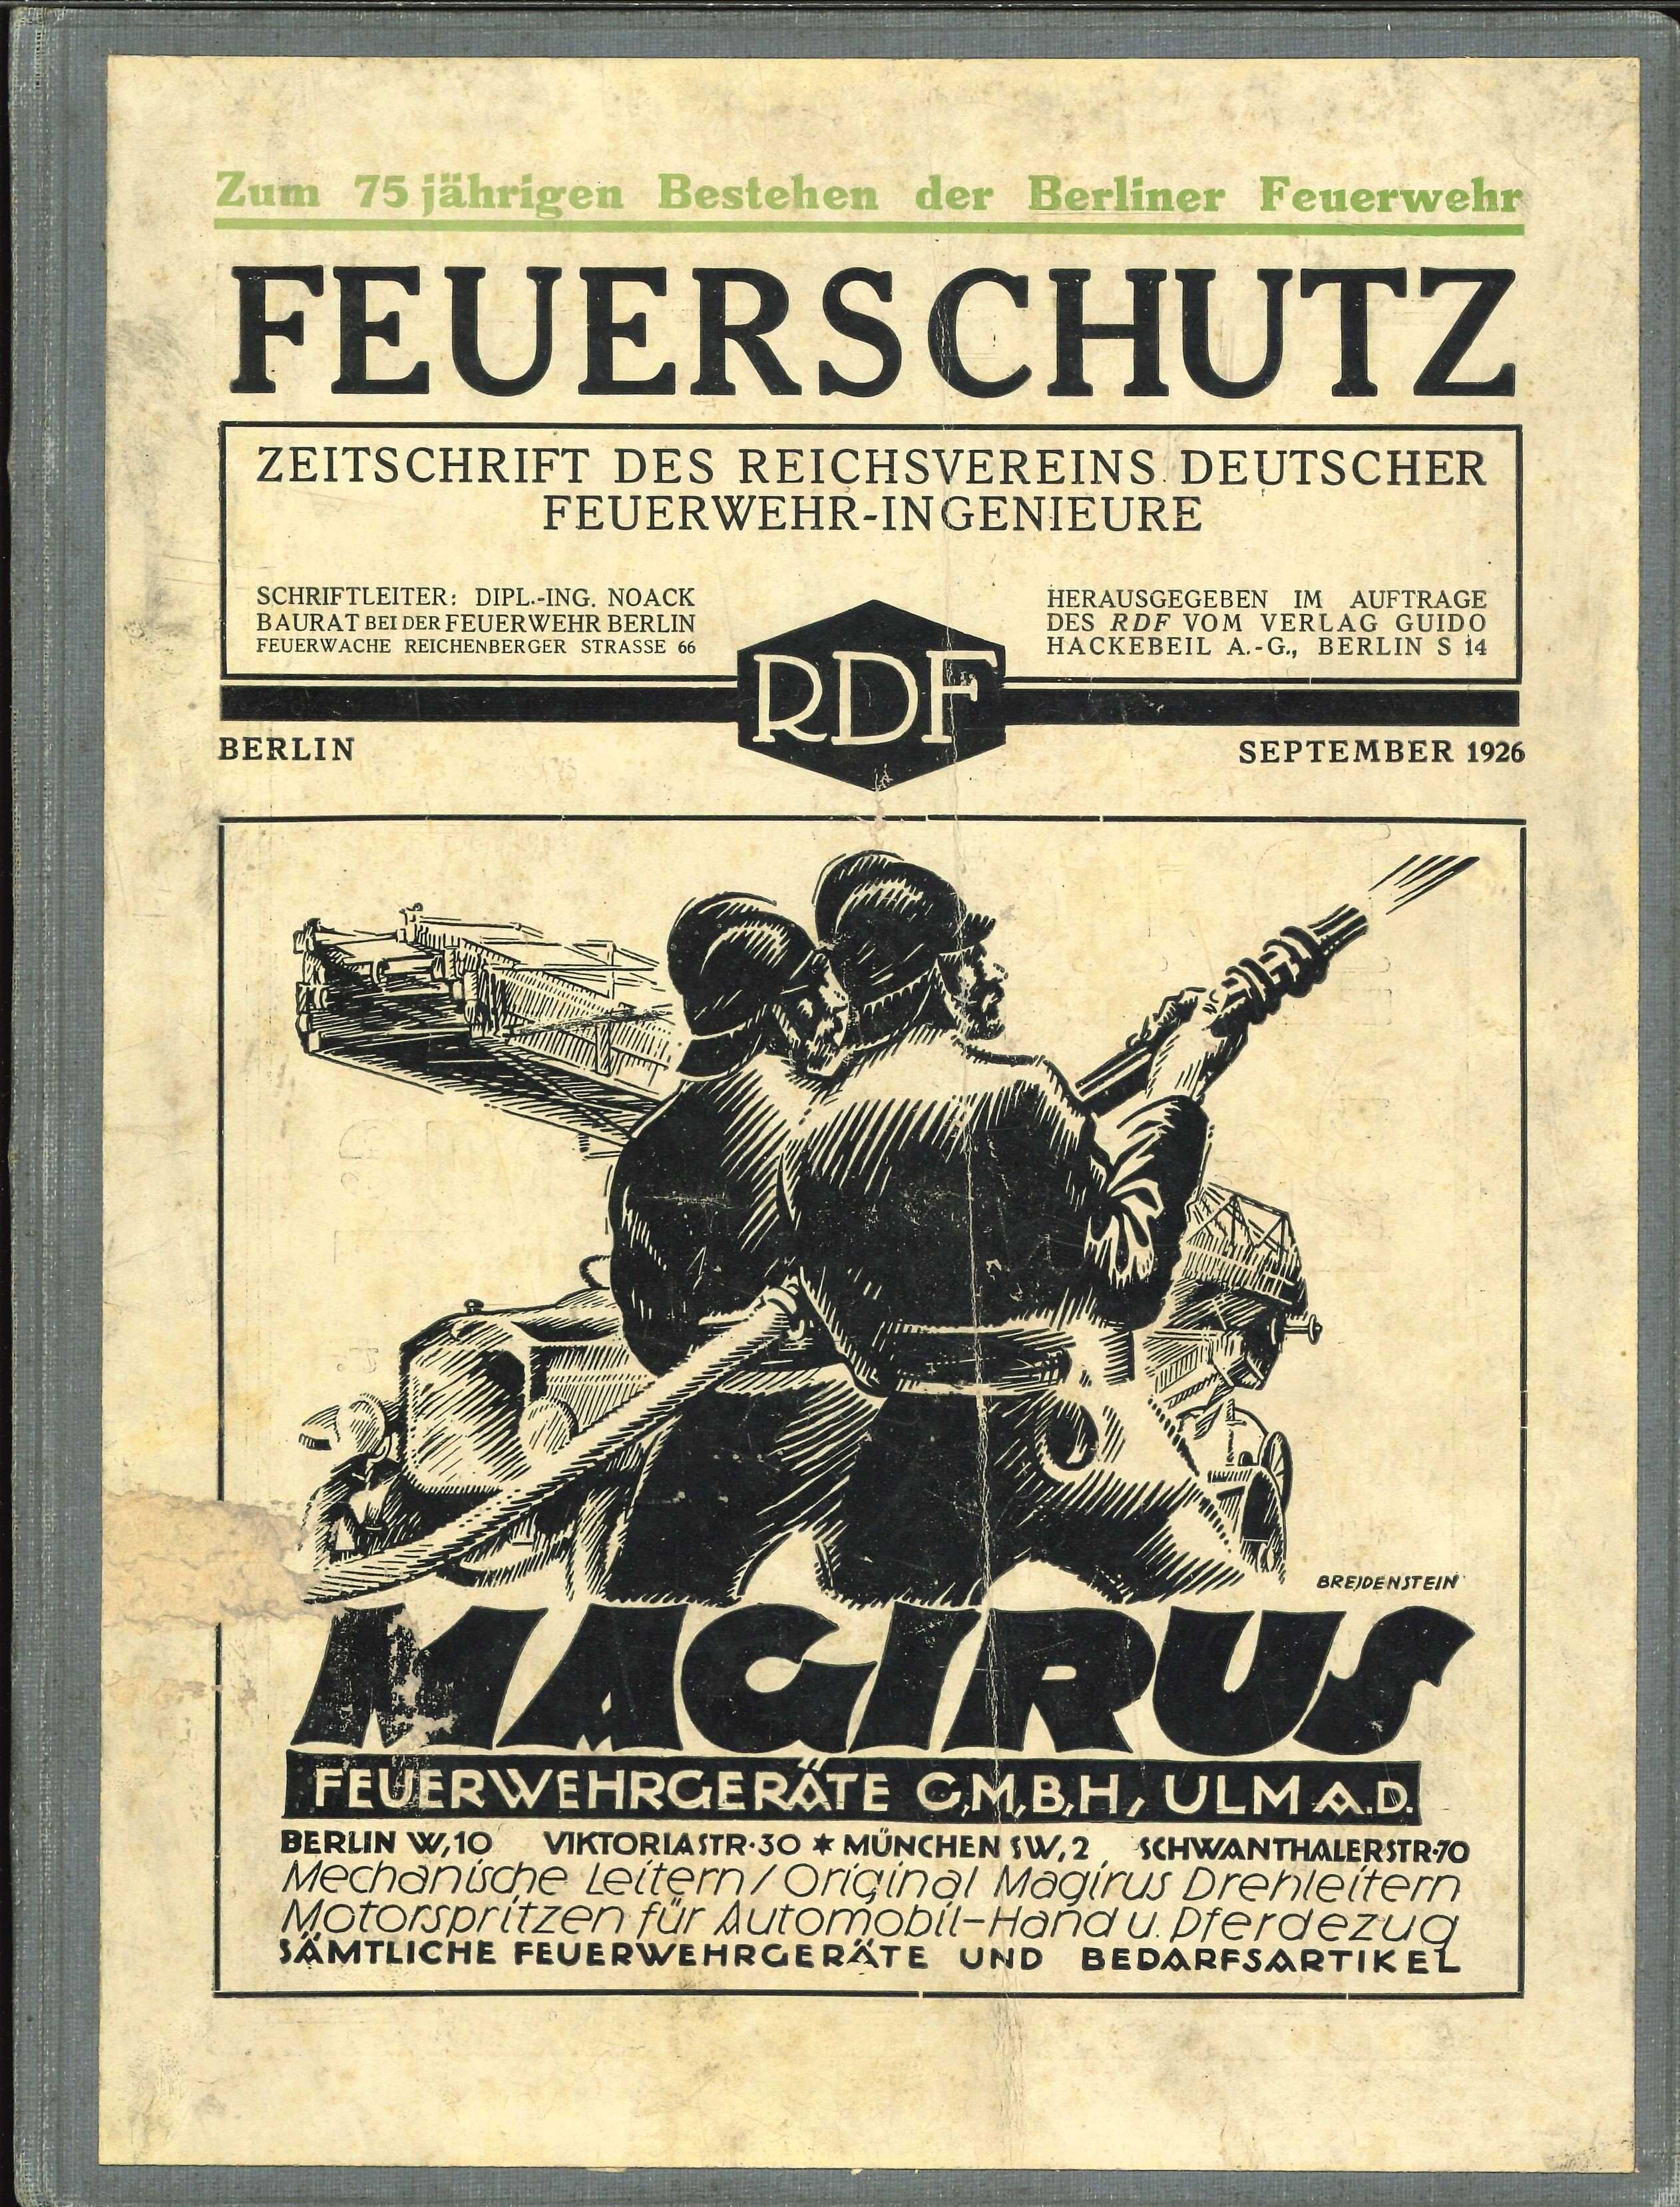 Festschrift Fw Berlin (Feuerwehrmuseum Grethen CC BY-NC-SA)